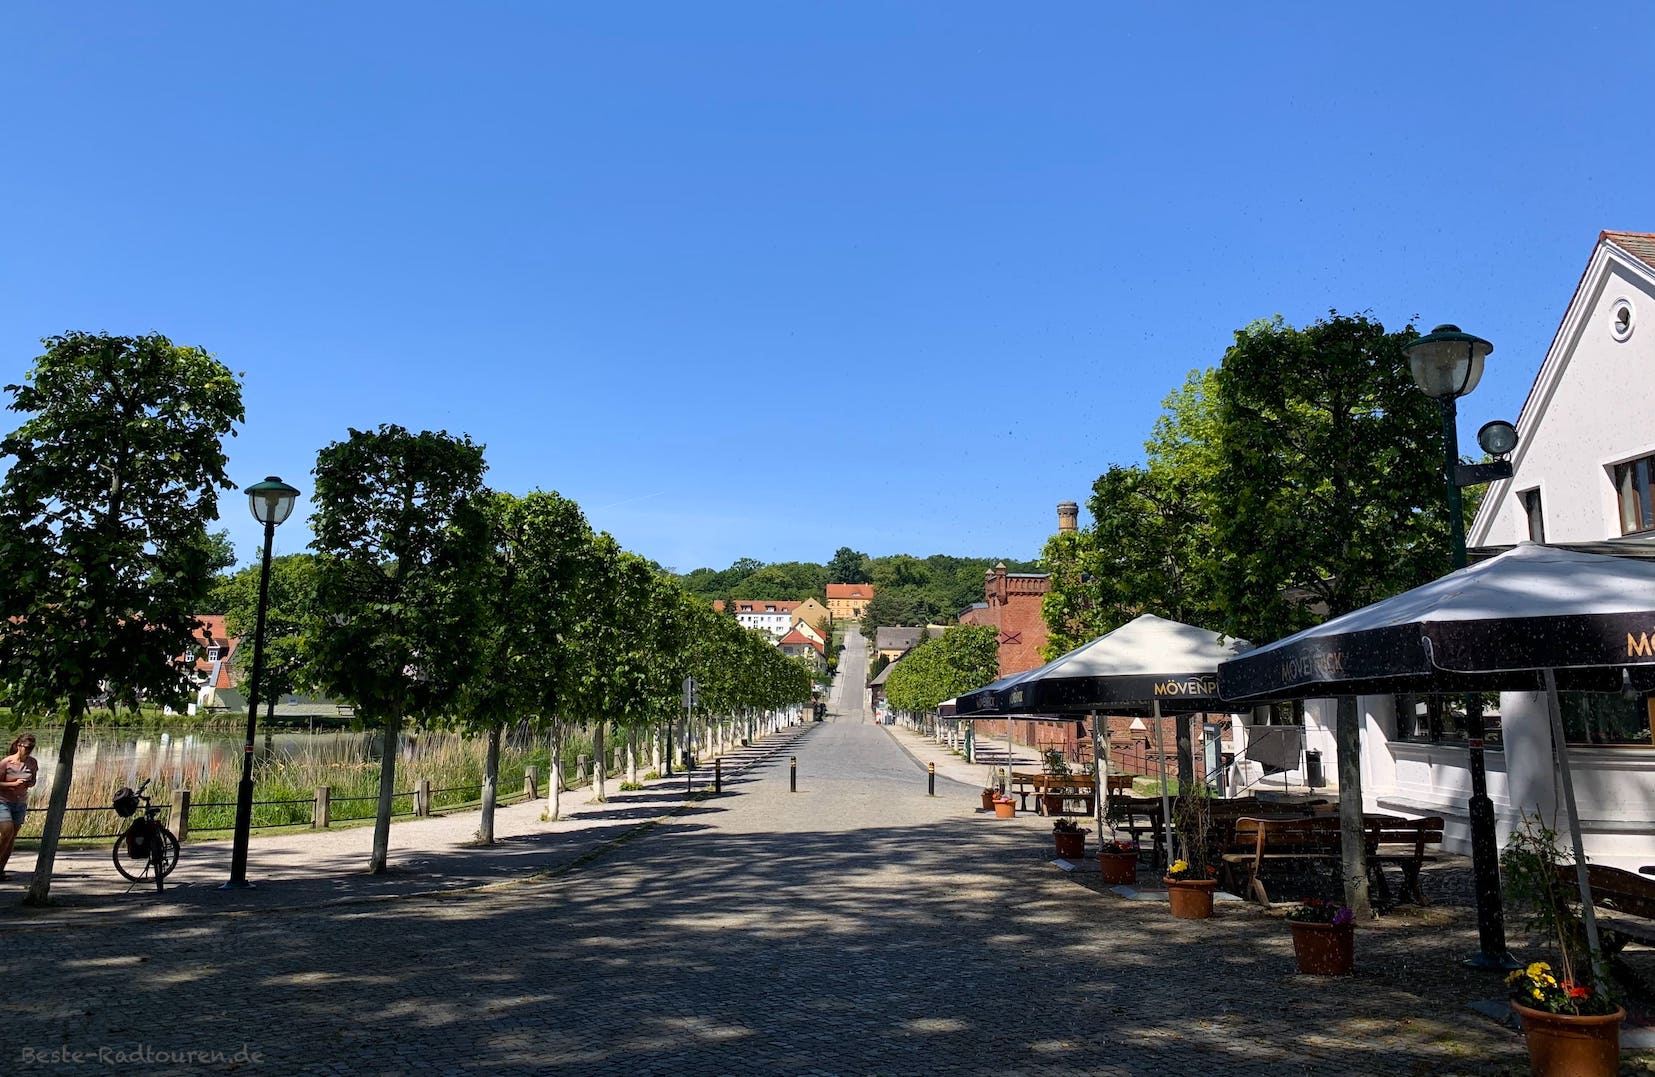 Kloster Neuzelle: Auffahrt mit Baumallee, Biergarten, Brauerei